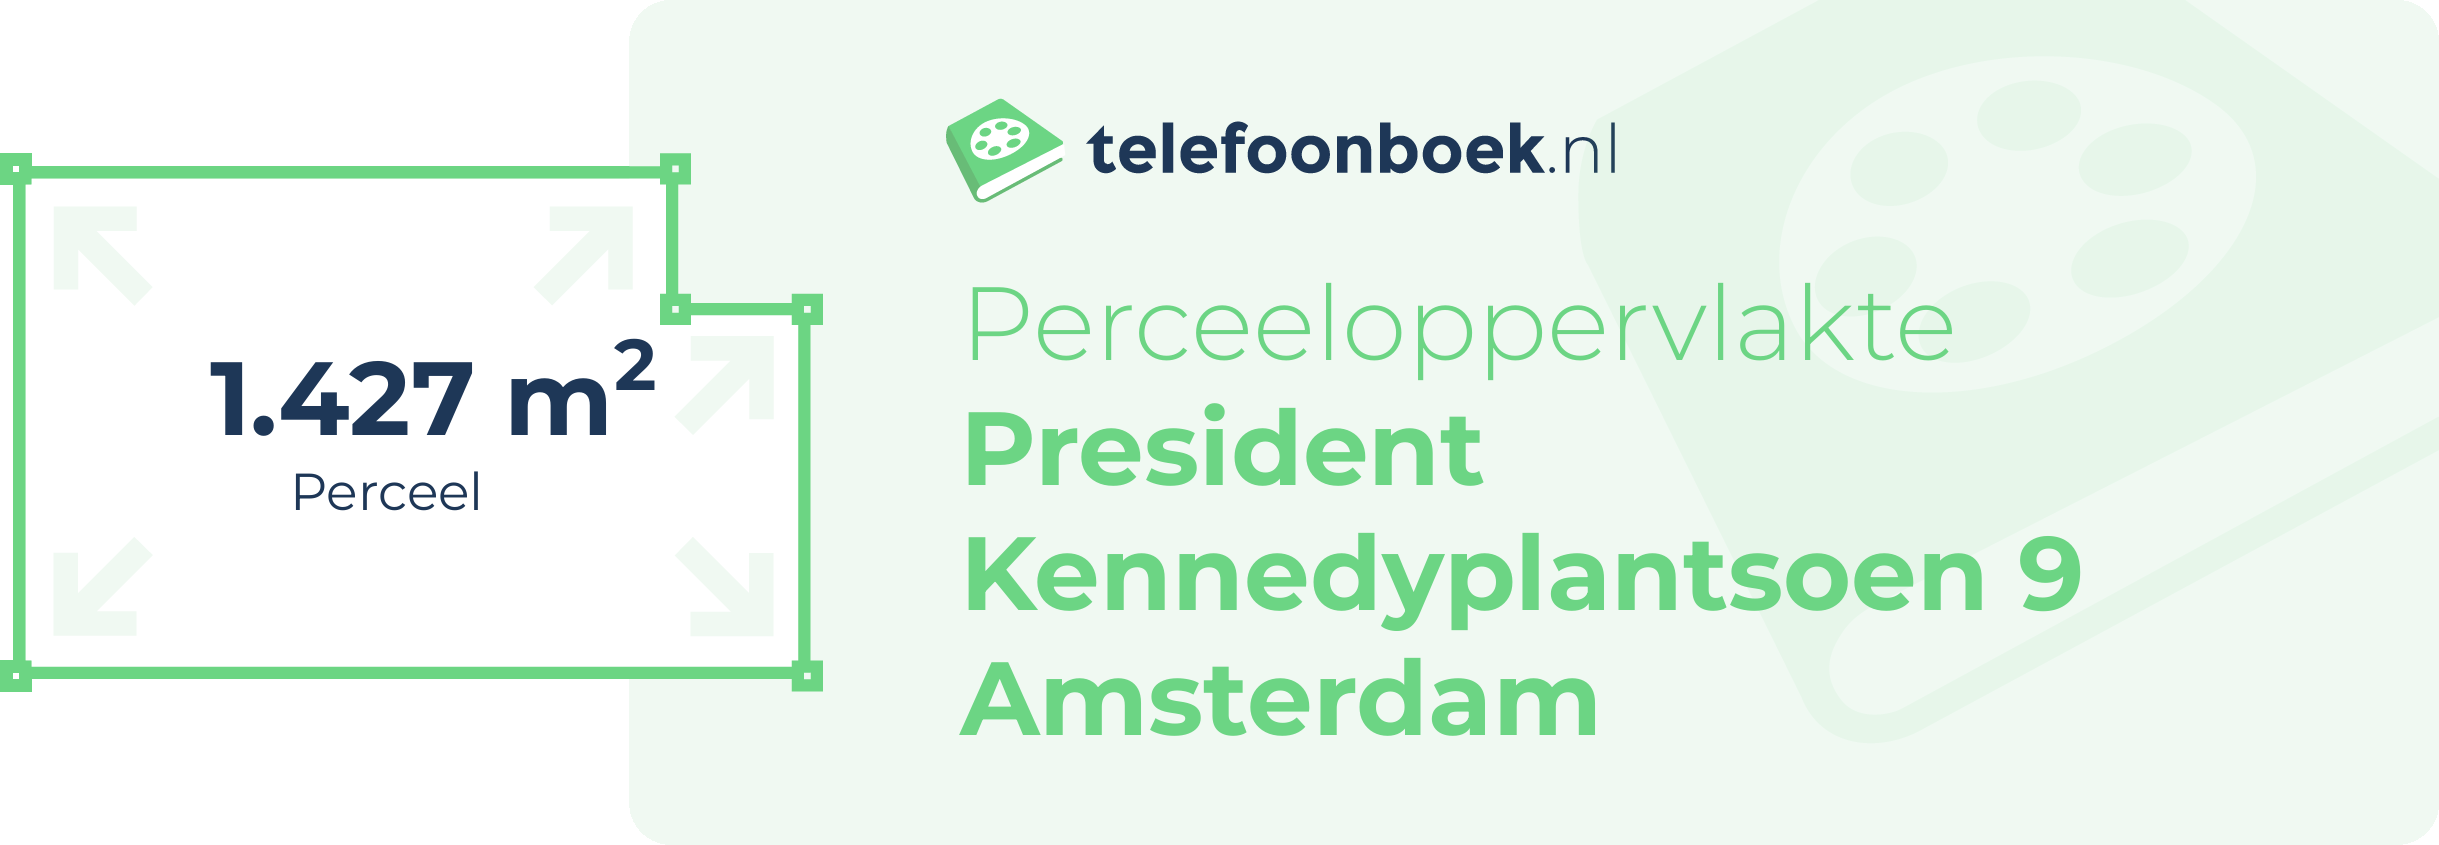 Perceeloppervlakte President Kennedyplantsoen 9 Amsterdam